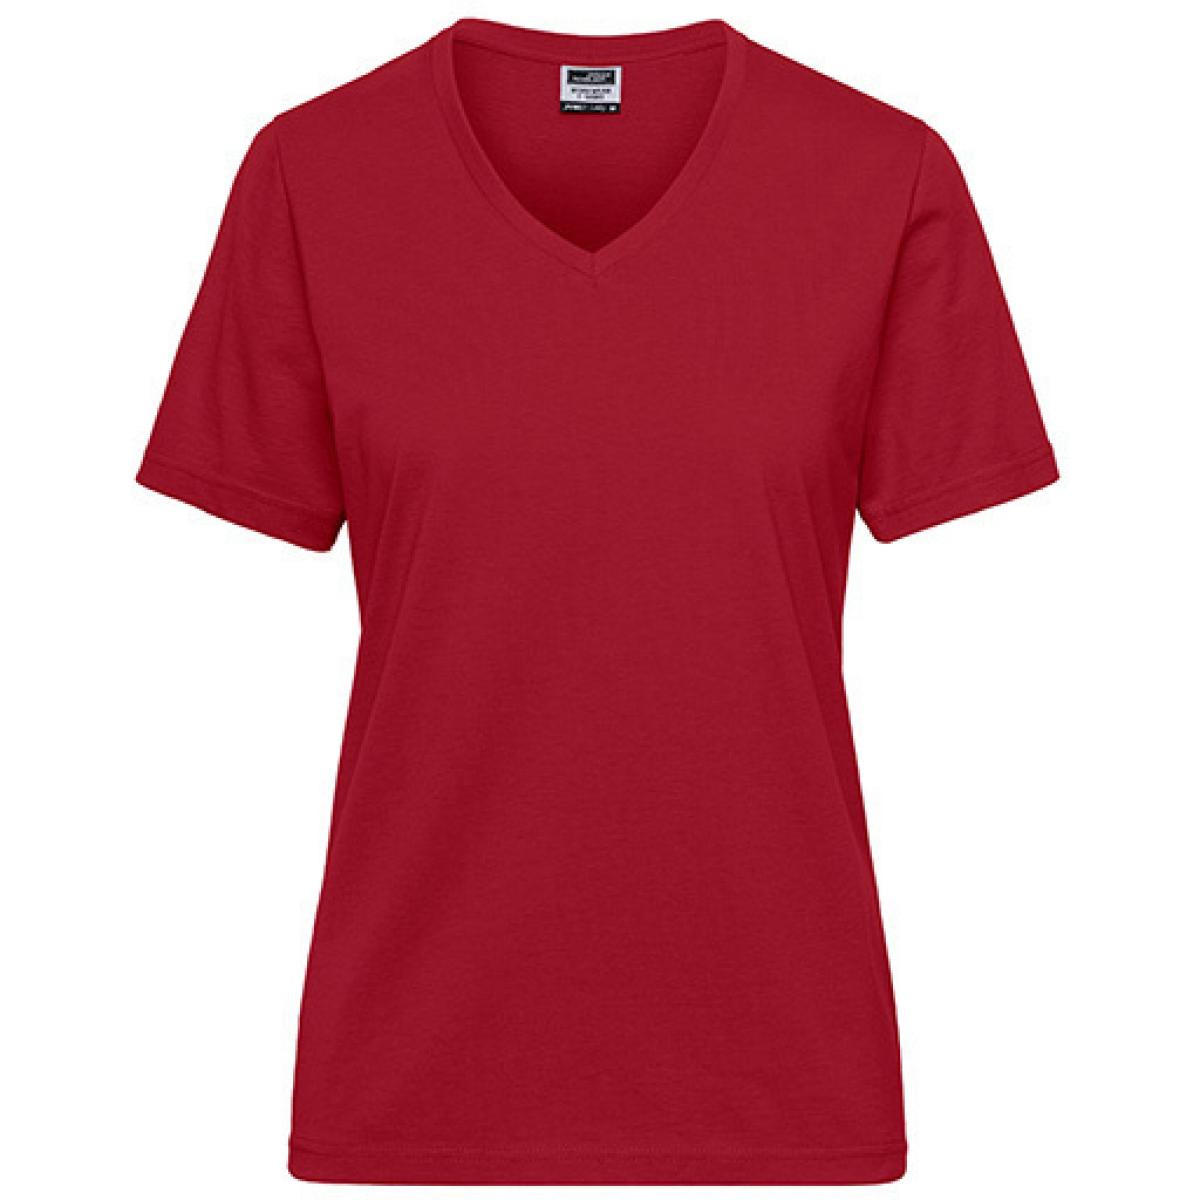 Hersteller: James+Nicholson Herstellernummer: JN1807 Artikelbezeichnung: Ladies‘ BIO Workwear T-Shirt / Damen T-Shirt - Waschbar 60C Farbe: Red